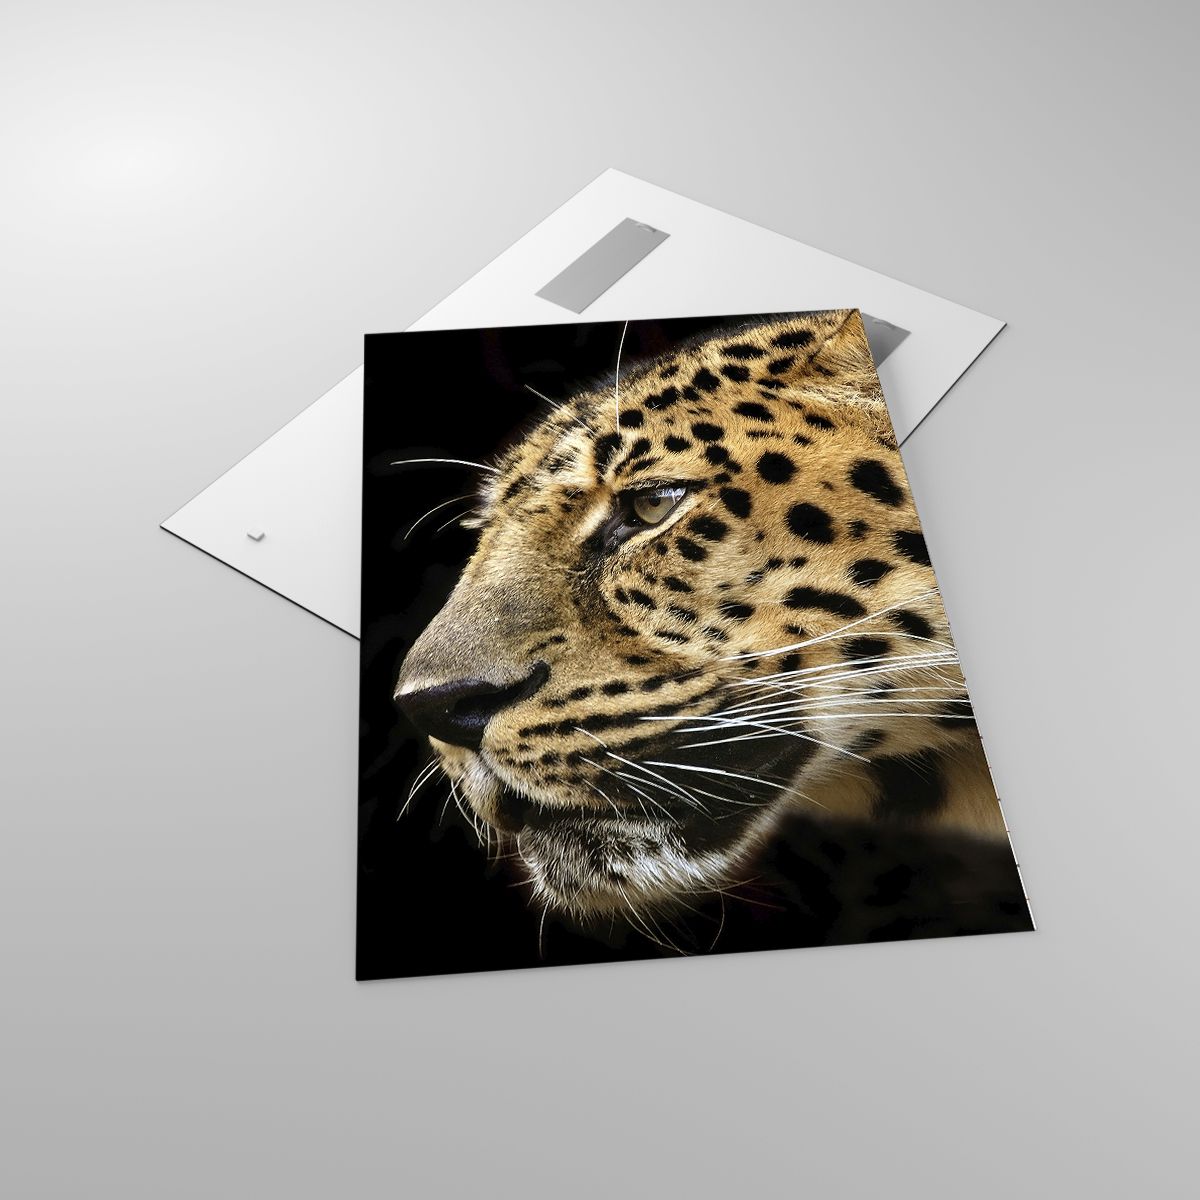 Glasbild Tiere, Glasbild Leopard, Glasbild Afrika, Glasbild Wilde Katze, Glasbild Natur